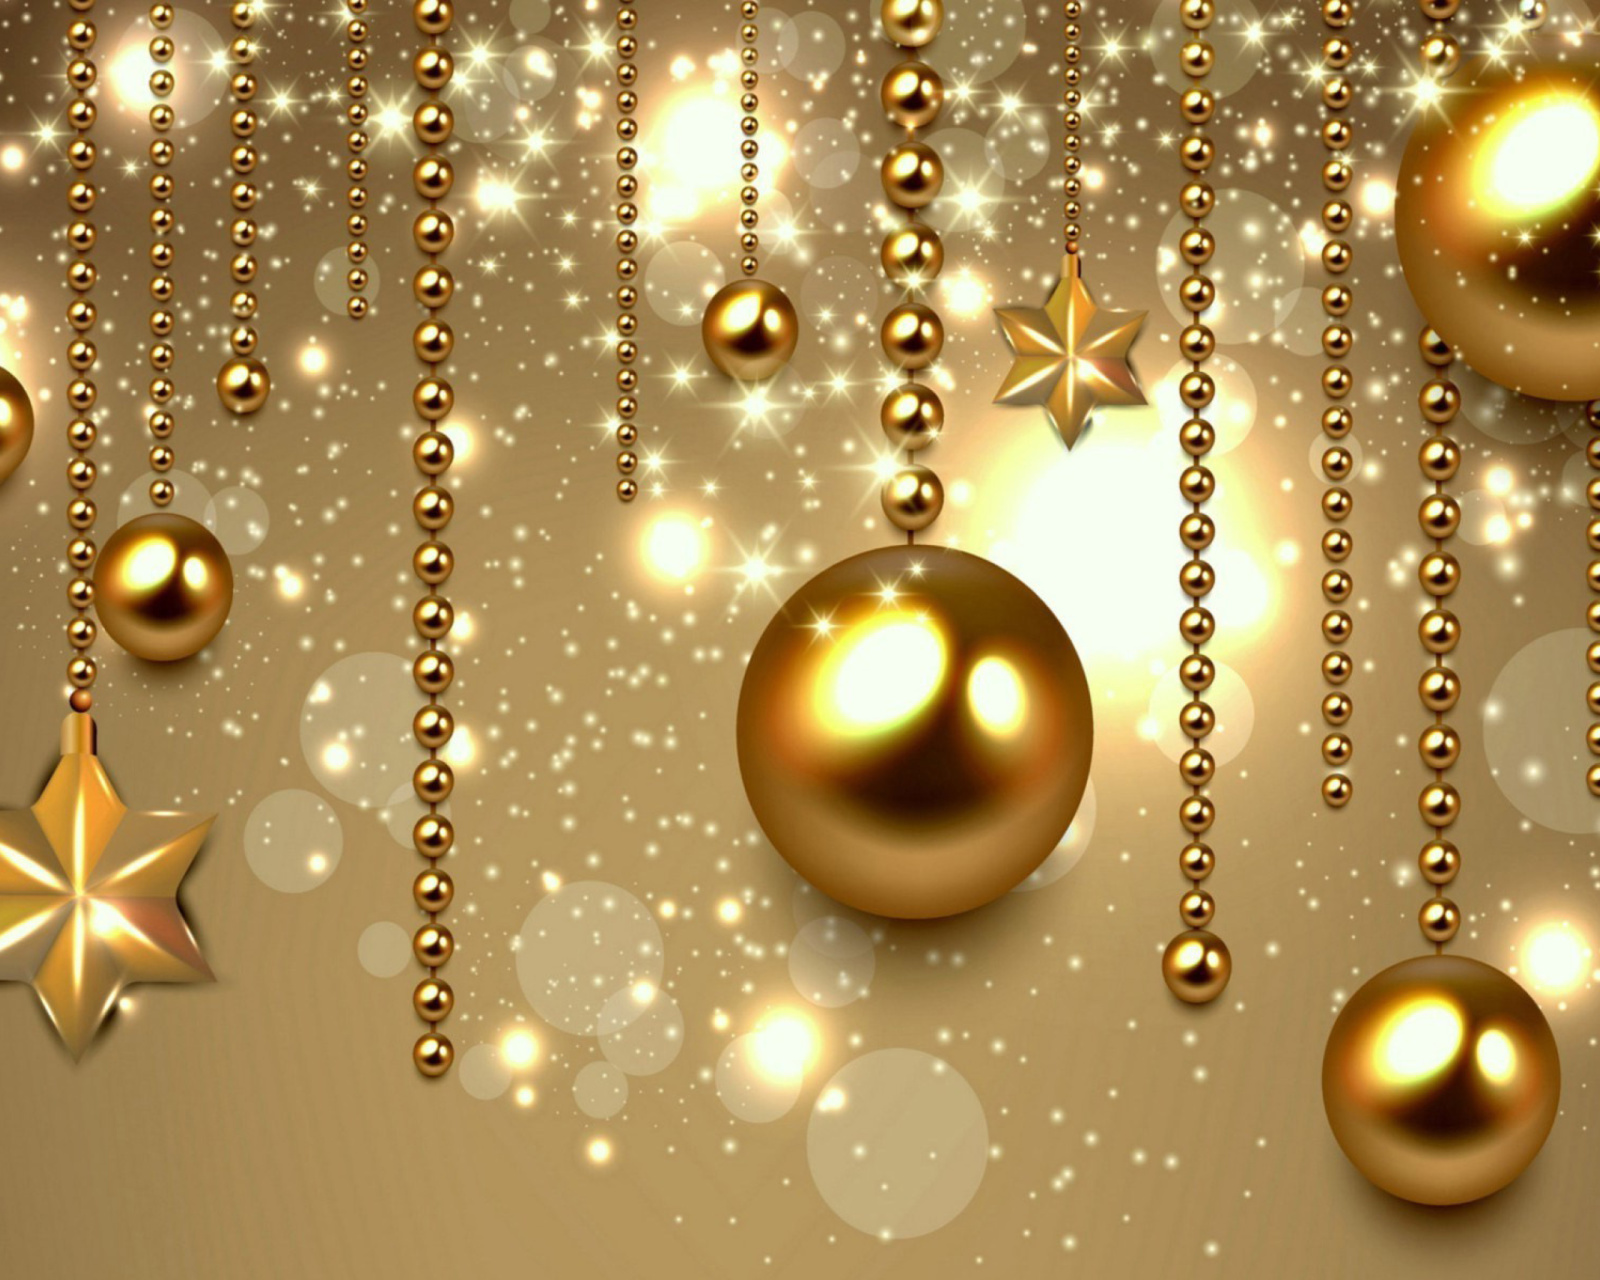 Das Golden Christmas Balls Wallpaper 1600x1280